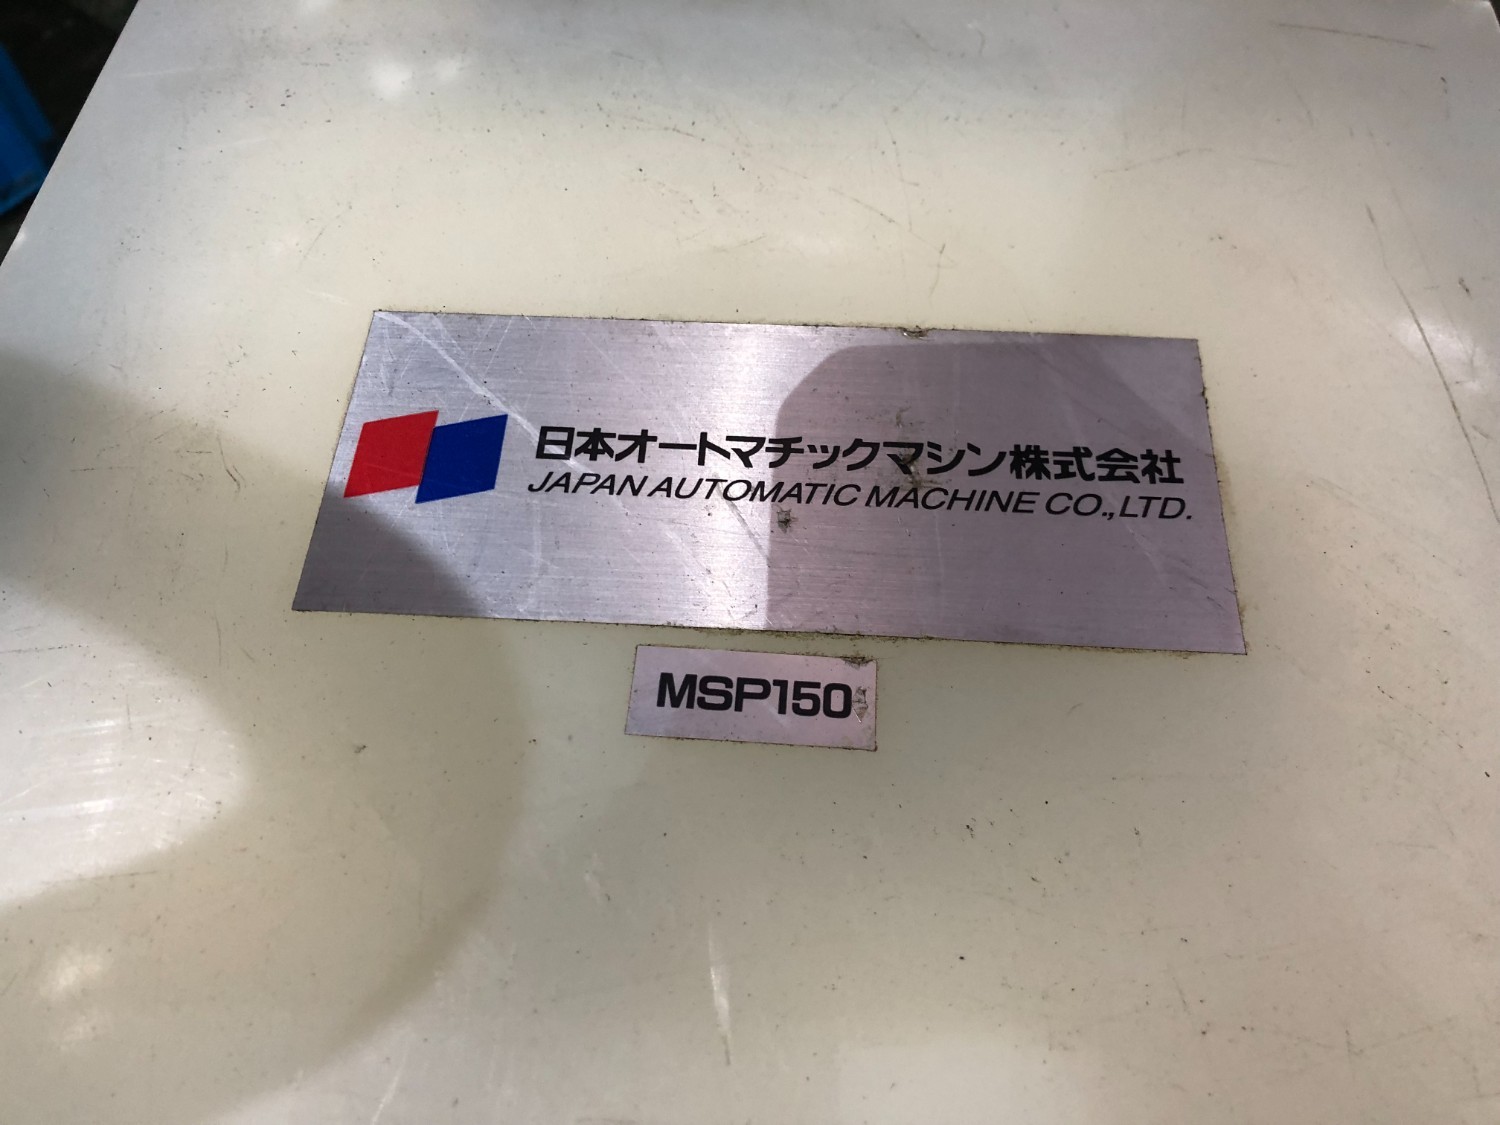 中古Other 【精密サインプレート(マグネット付きタイプ)】  MSP150 JAM/日本オートマチックマシン